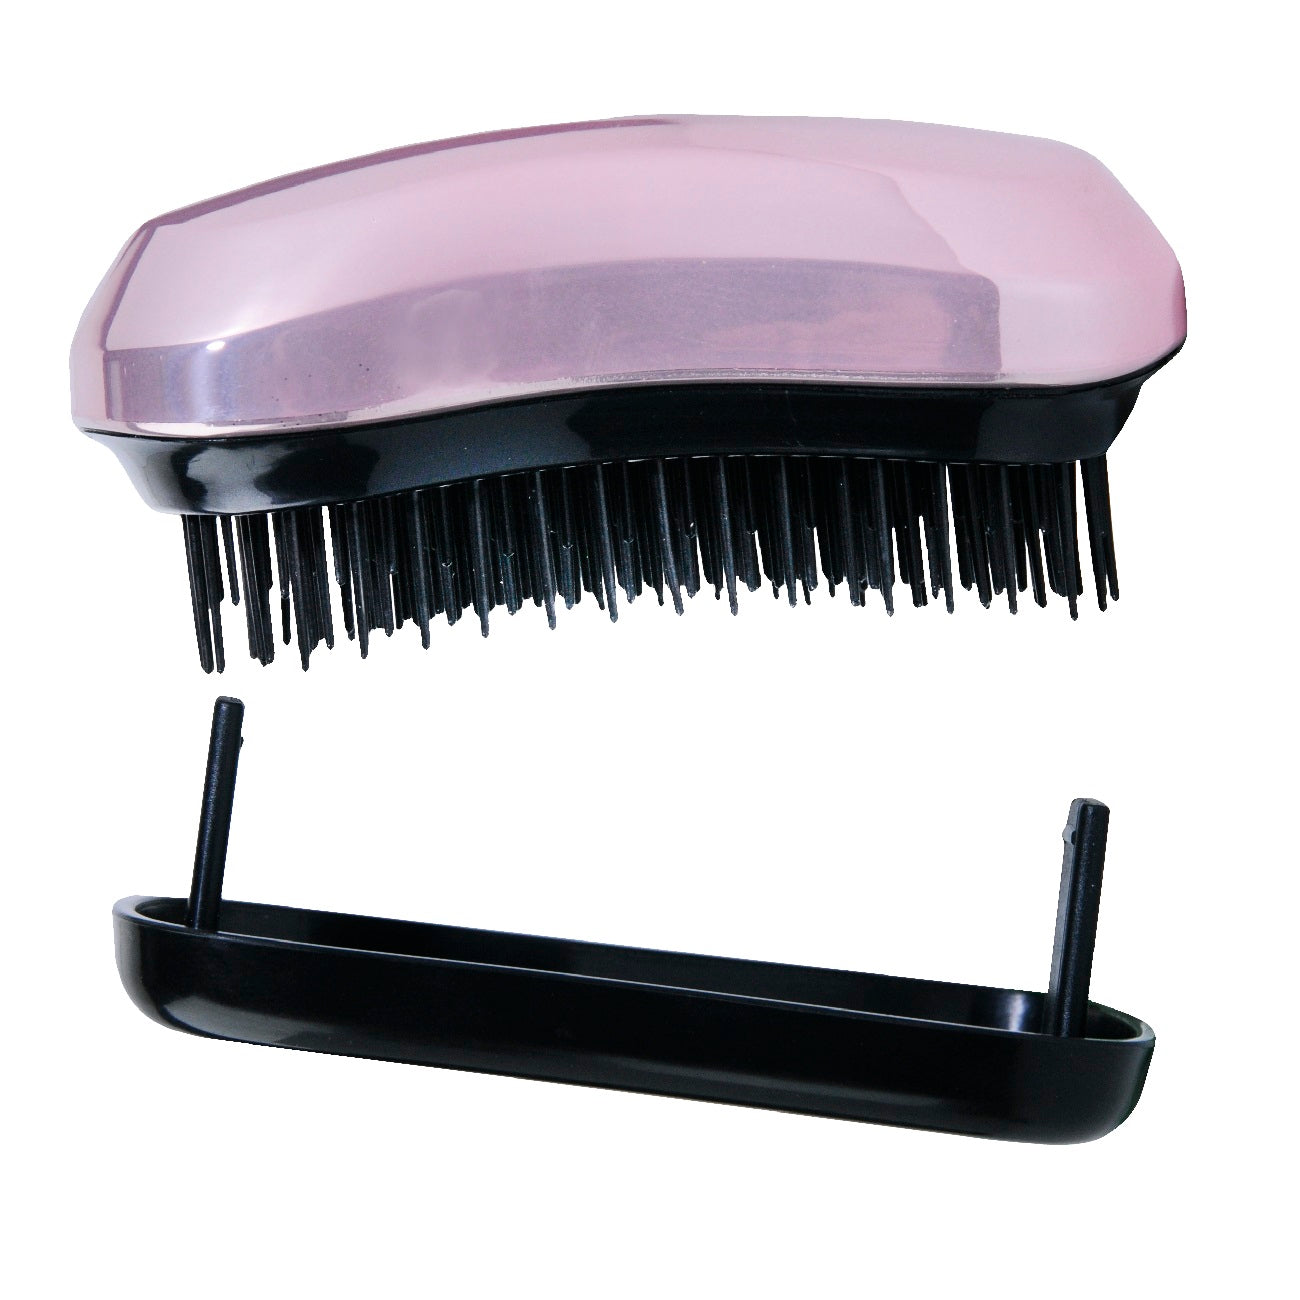 Inter Vion Компактная расческа для волос Brush & Go с розовым металликом расческа для волос 1 шт inter vion untangle brush